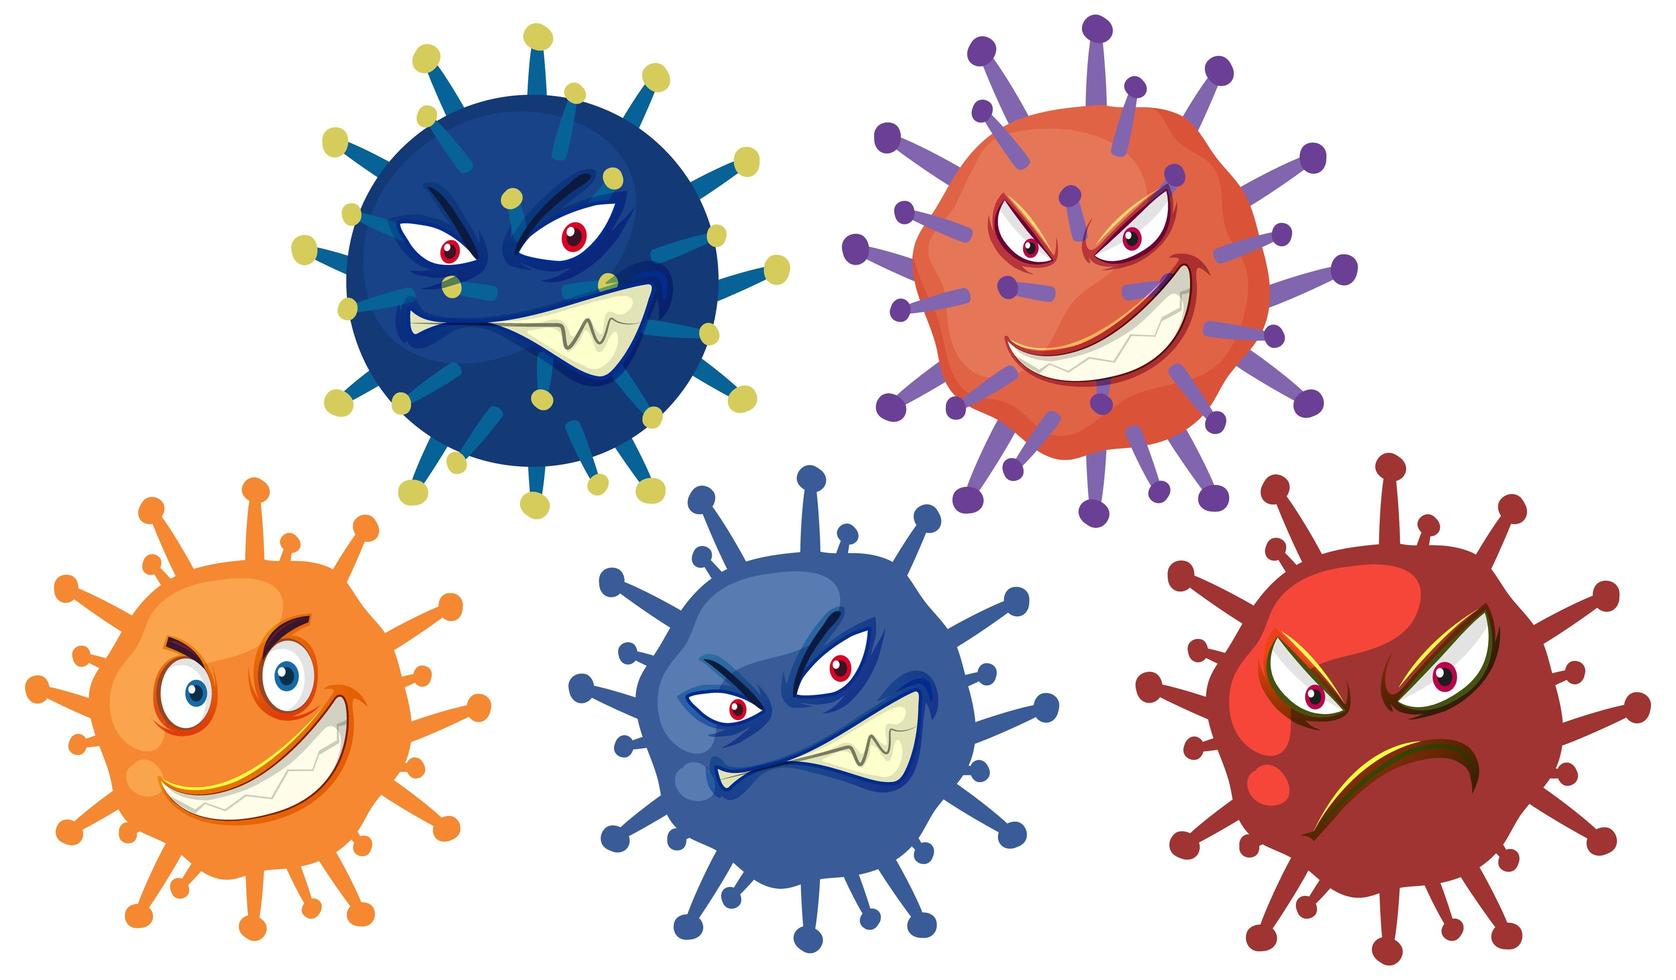 muitos caracteres de células de vírus com rosto assustador no fundo branco vetor